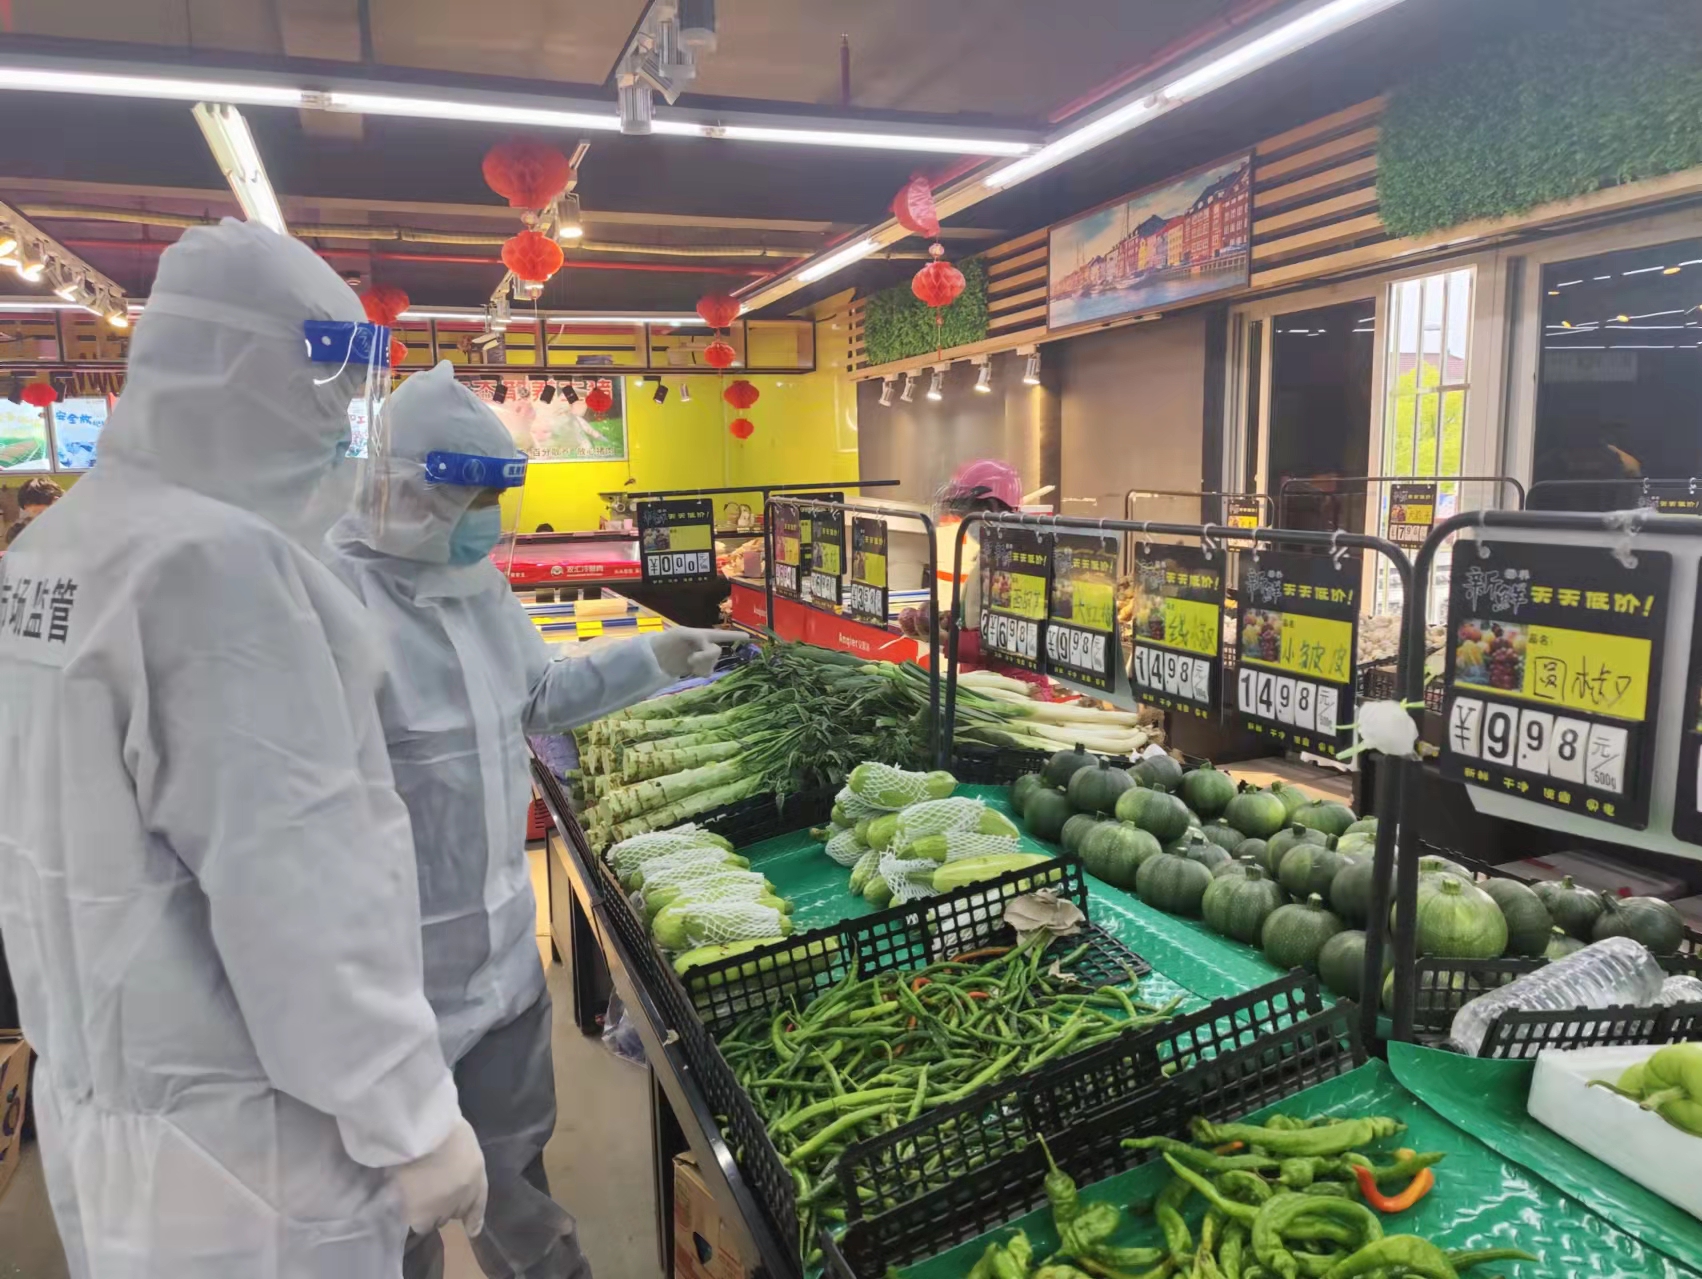 进口3元马铃薯售价16.8元 上海市市场监管部份严查价钱违法行动